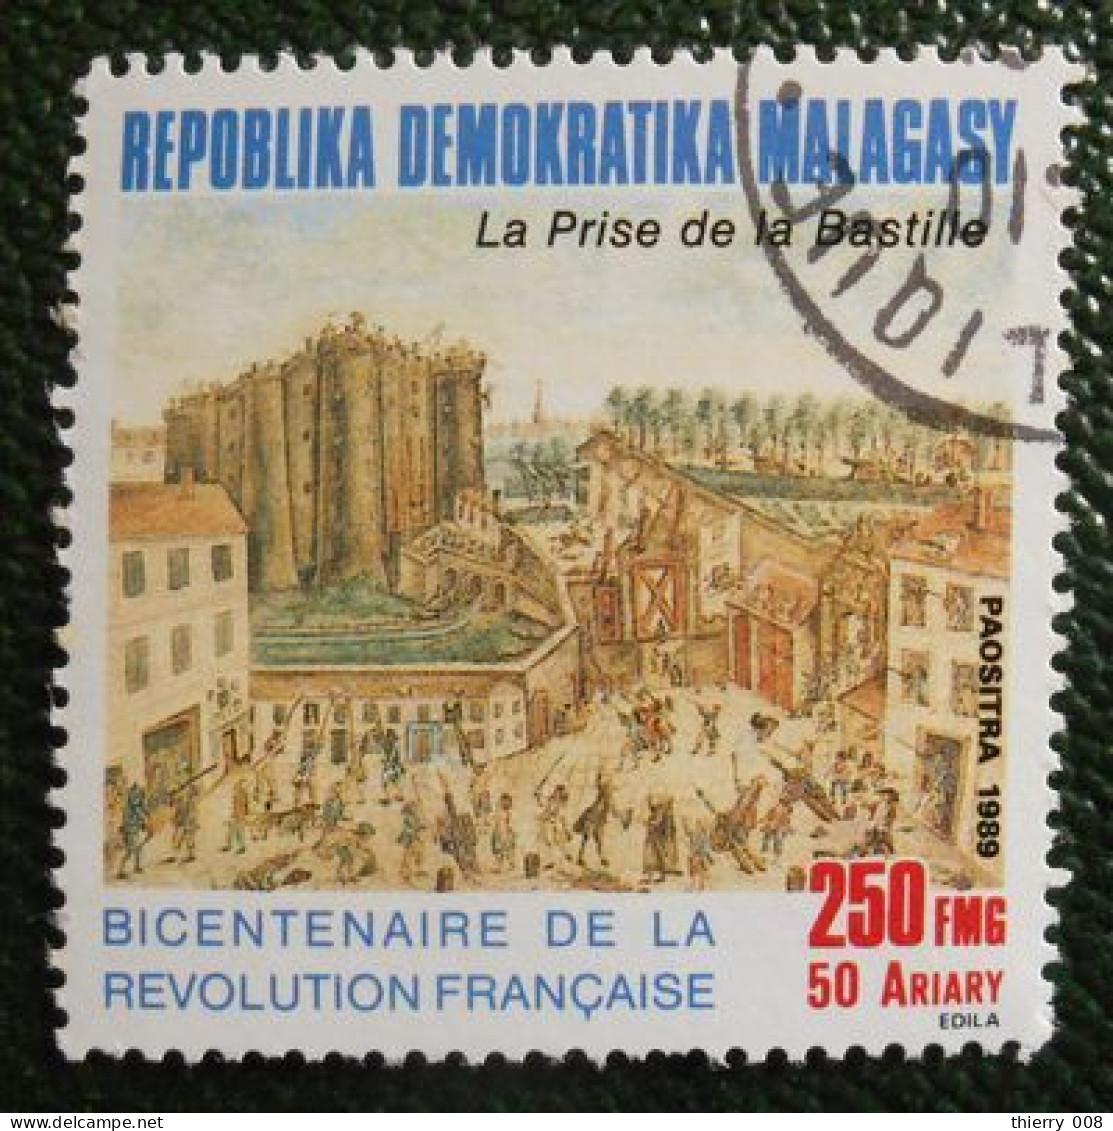 45 République Démocratique Malgache Malagasy Oblitéré Prise De La Bastille - French Revolution